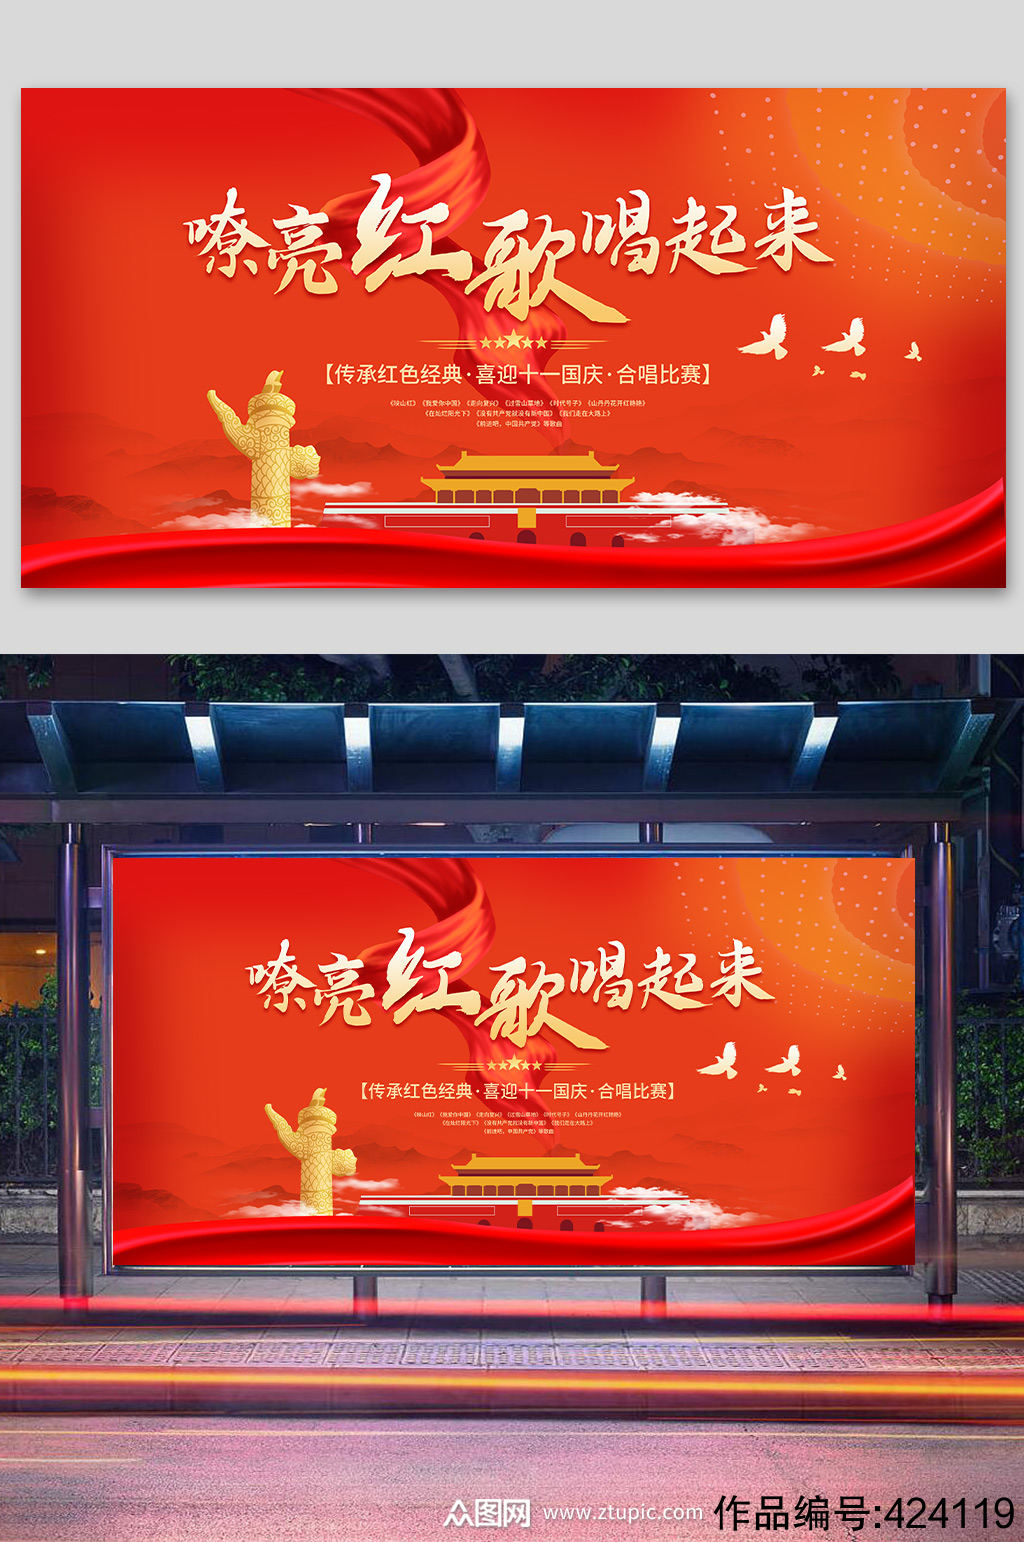 迎国庆嘹亮红歌合唱比赛 校园红歌歌唱比赛展板海报